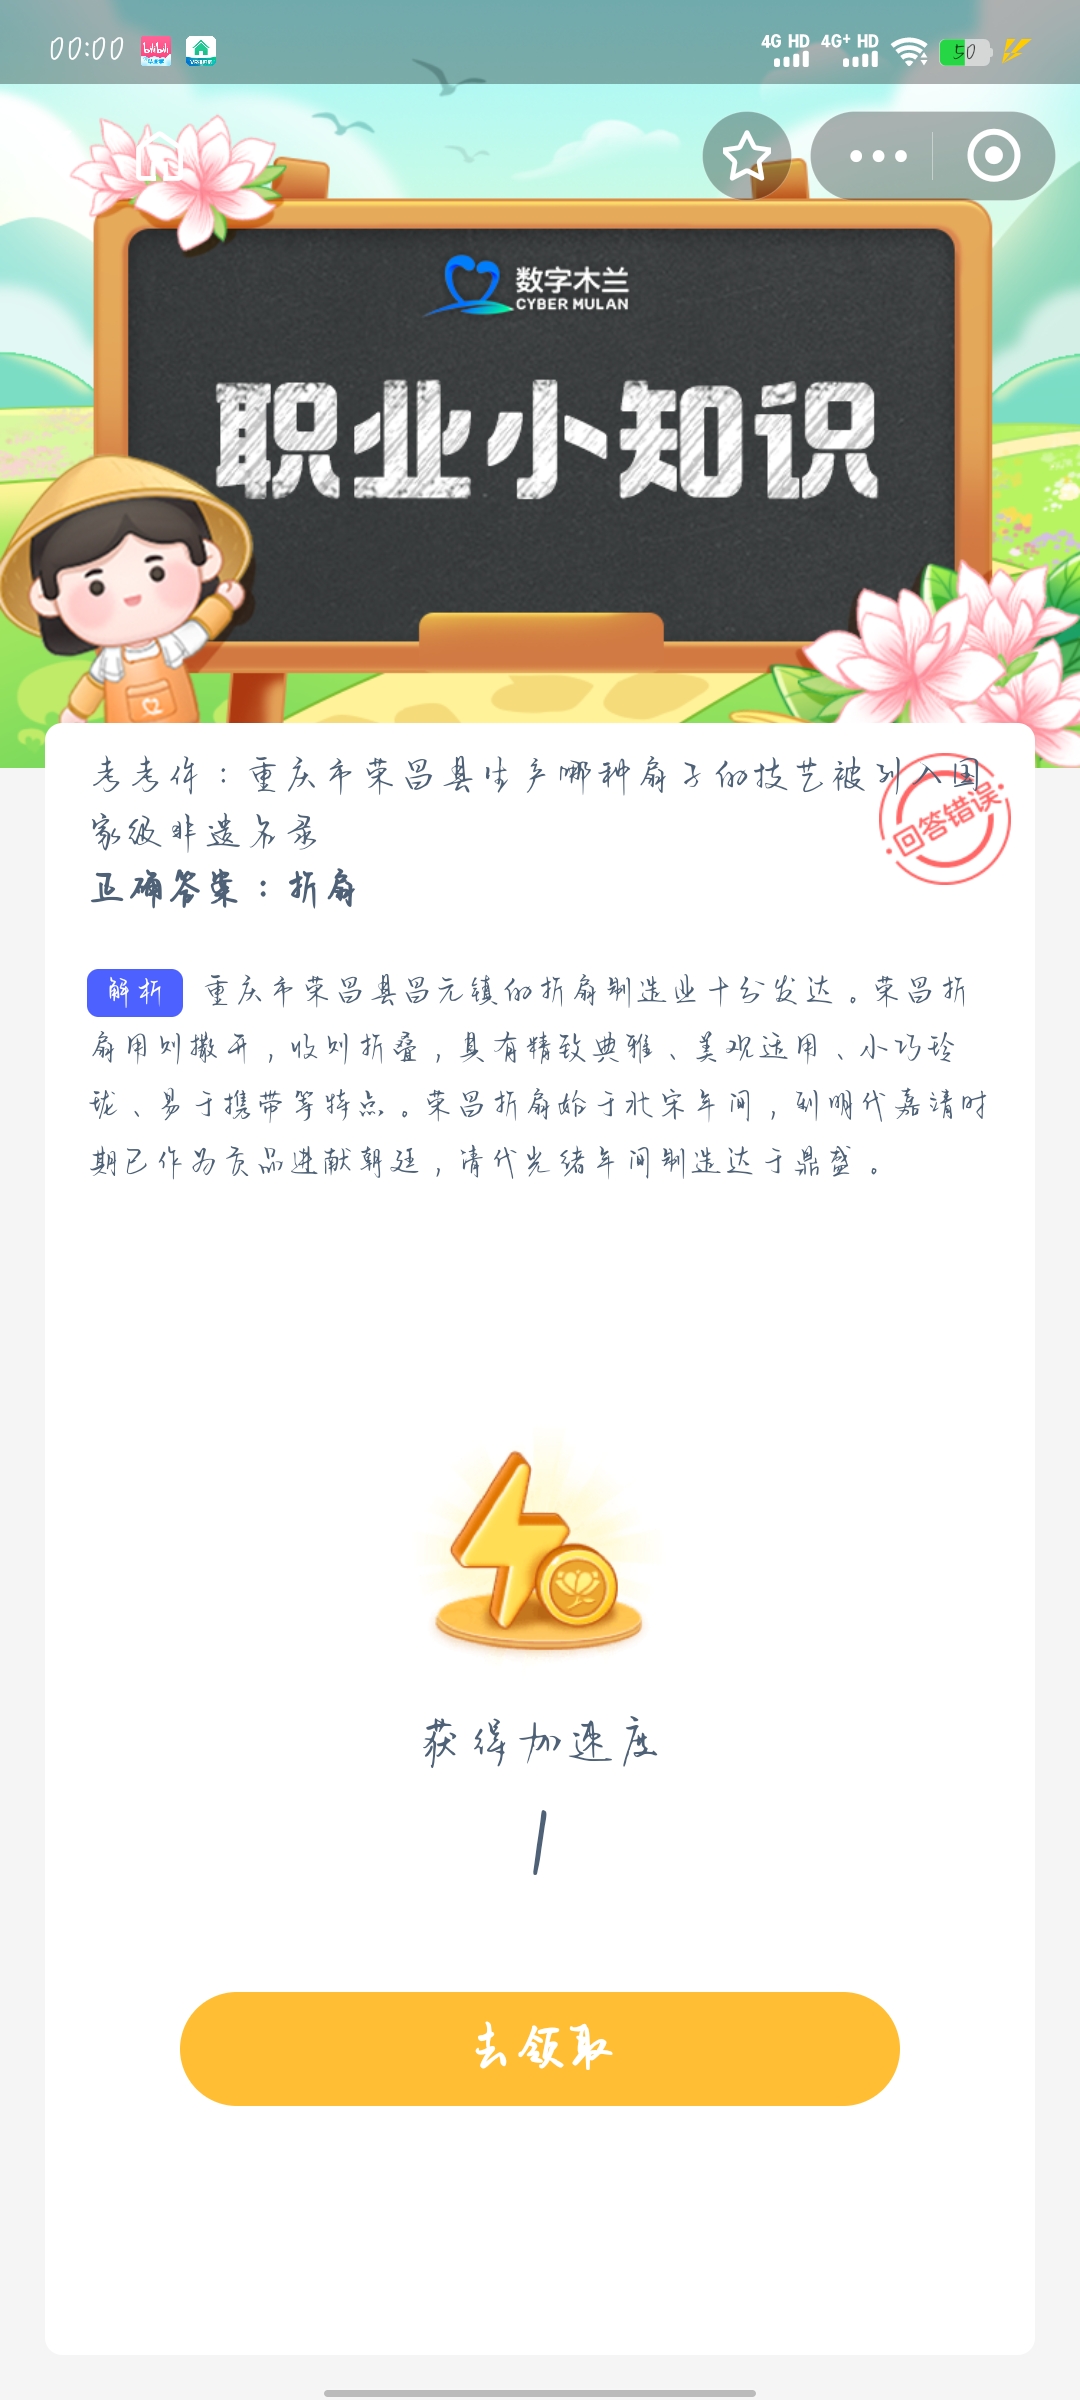 考考你重庆市荣昌县生产哪种扇子的技艺被列入国家级非遗名录